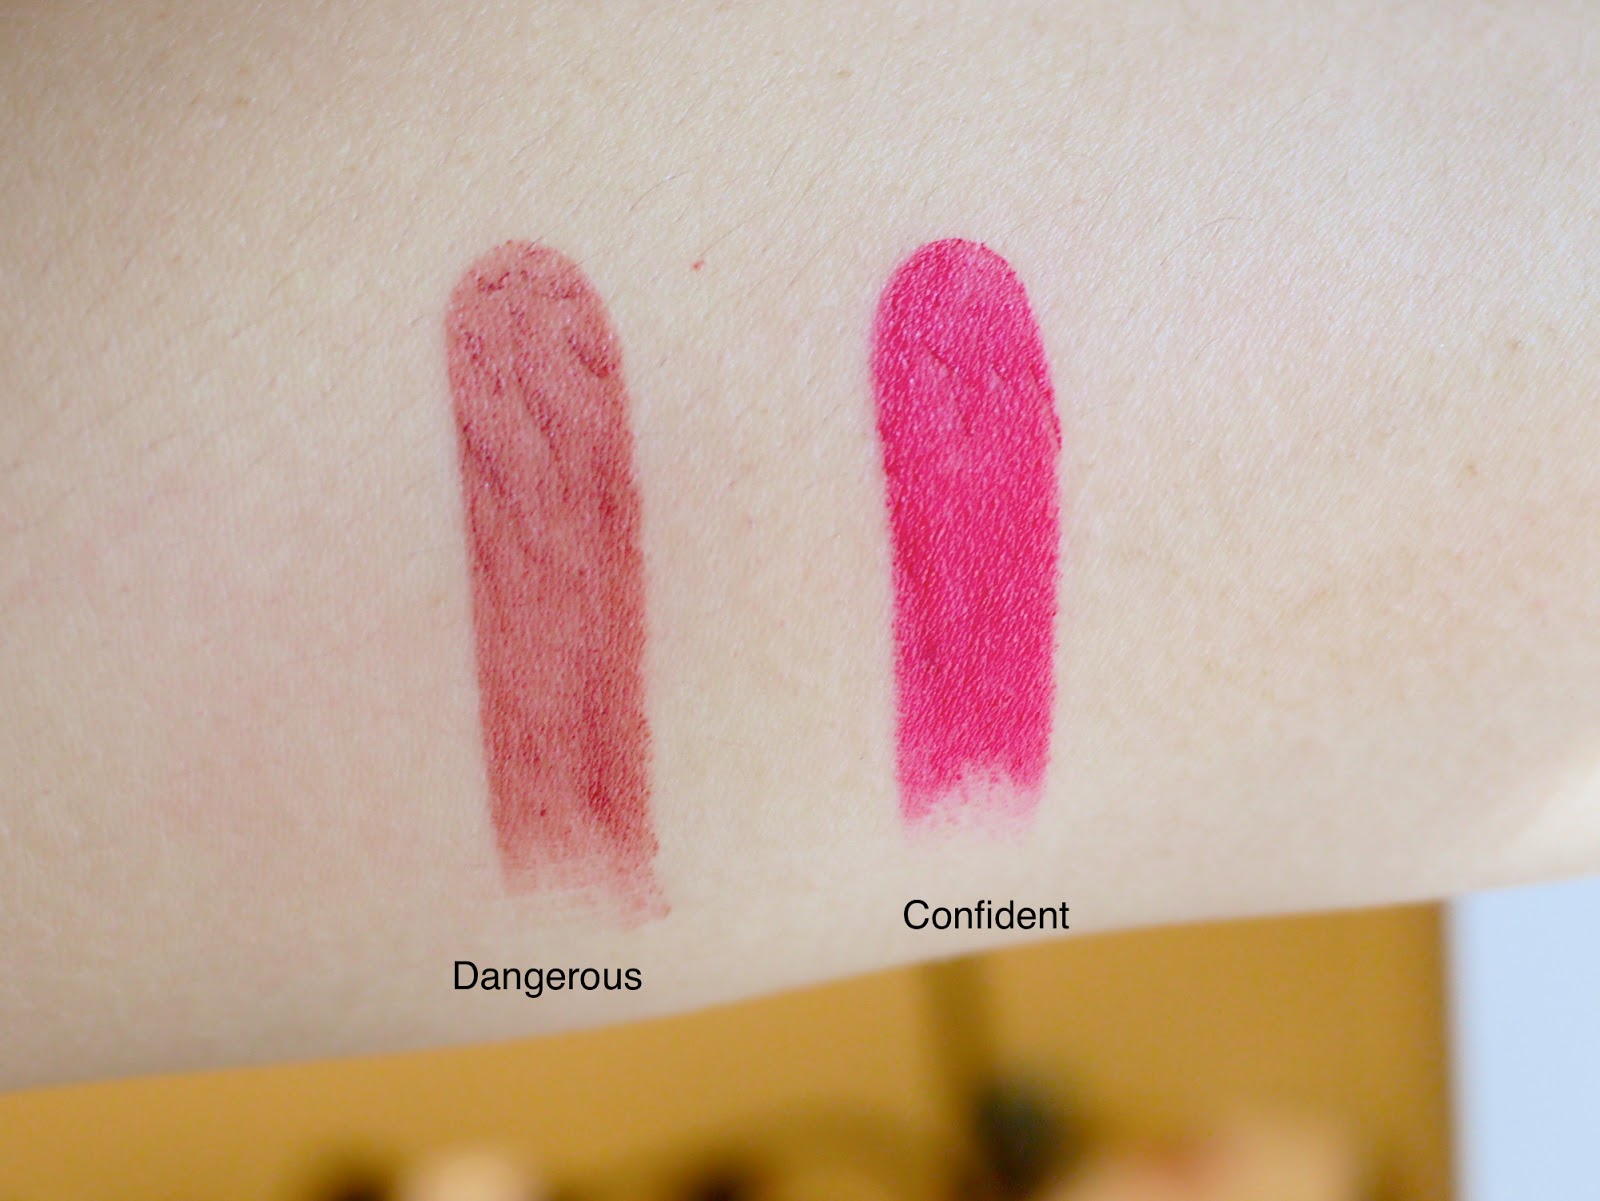 Estee Lauder Pure Color Envy Sculpting Lipsticks Confident Dangerous Swatch review